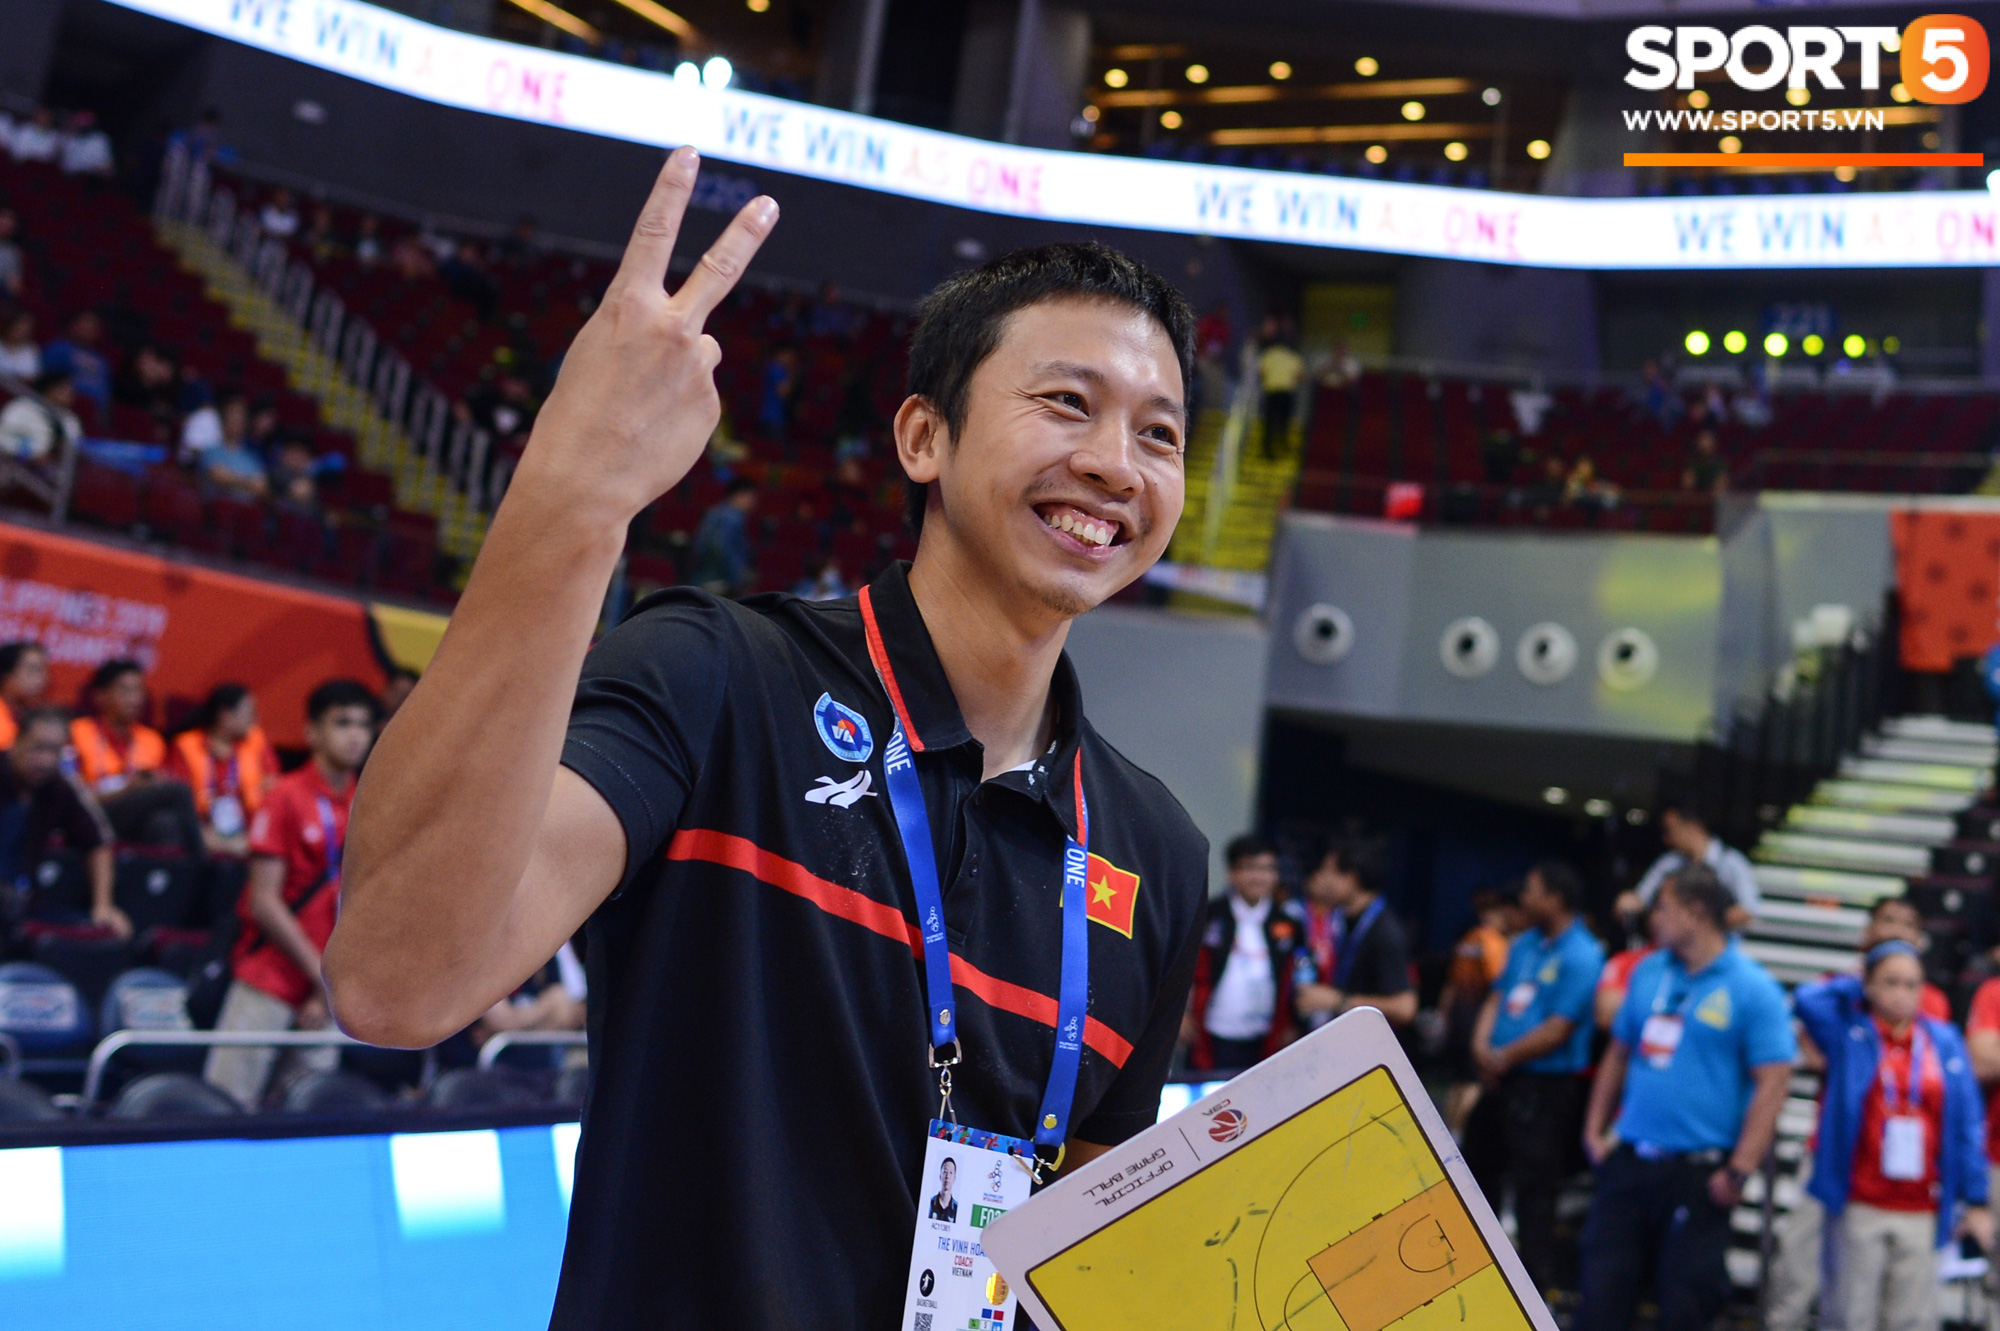 Chùm ảnh: Bật tung cảm xúc khi bóng rổ Việt Nam lần đầu giành tấm huy chương đồng tại SEA Games - Ảnh 6.